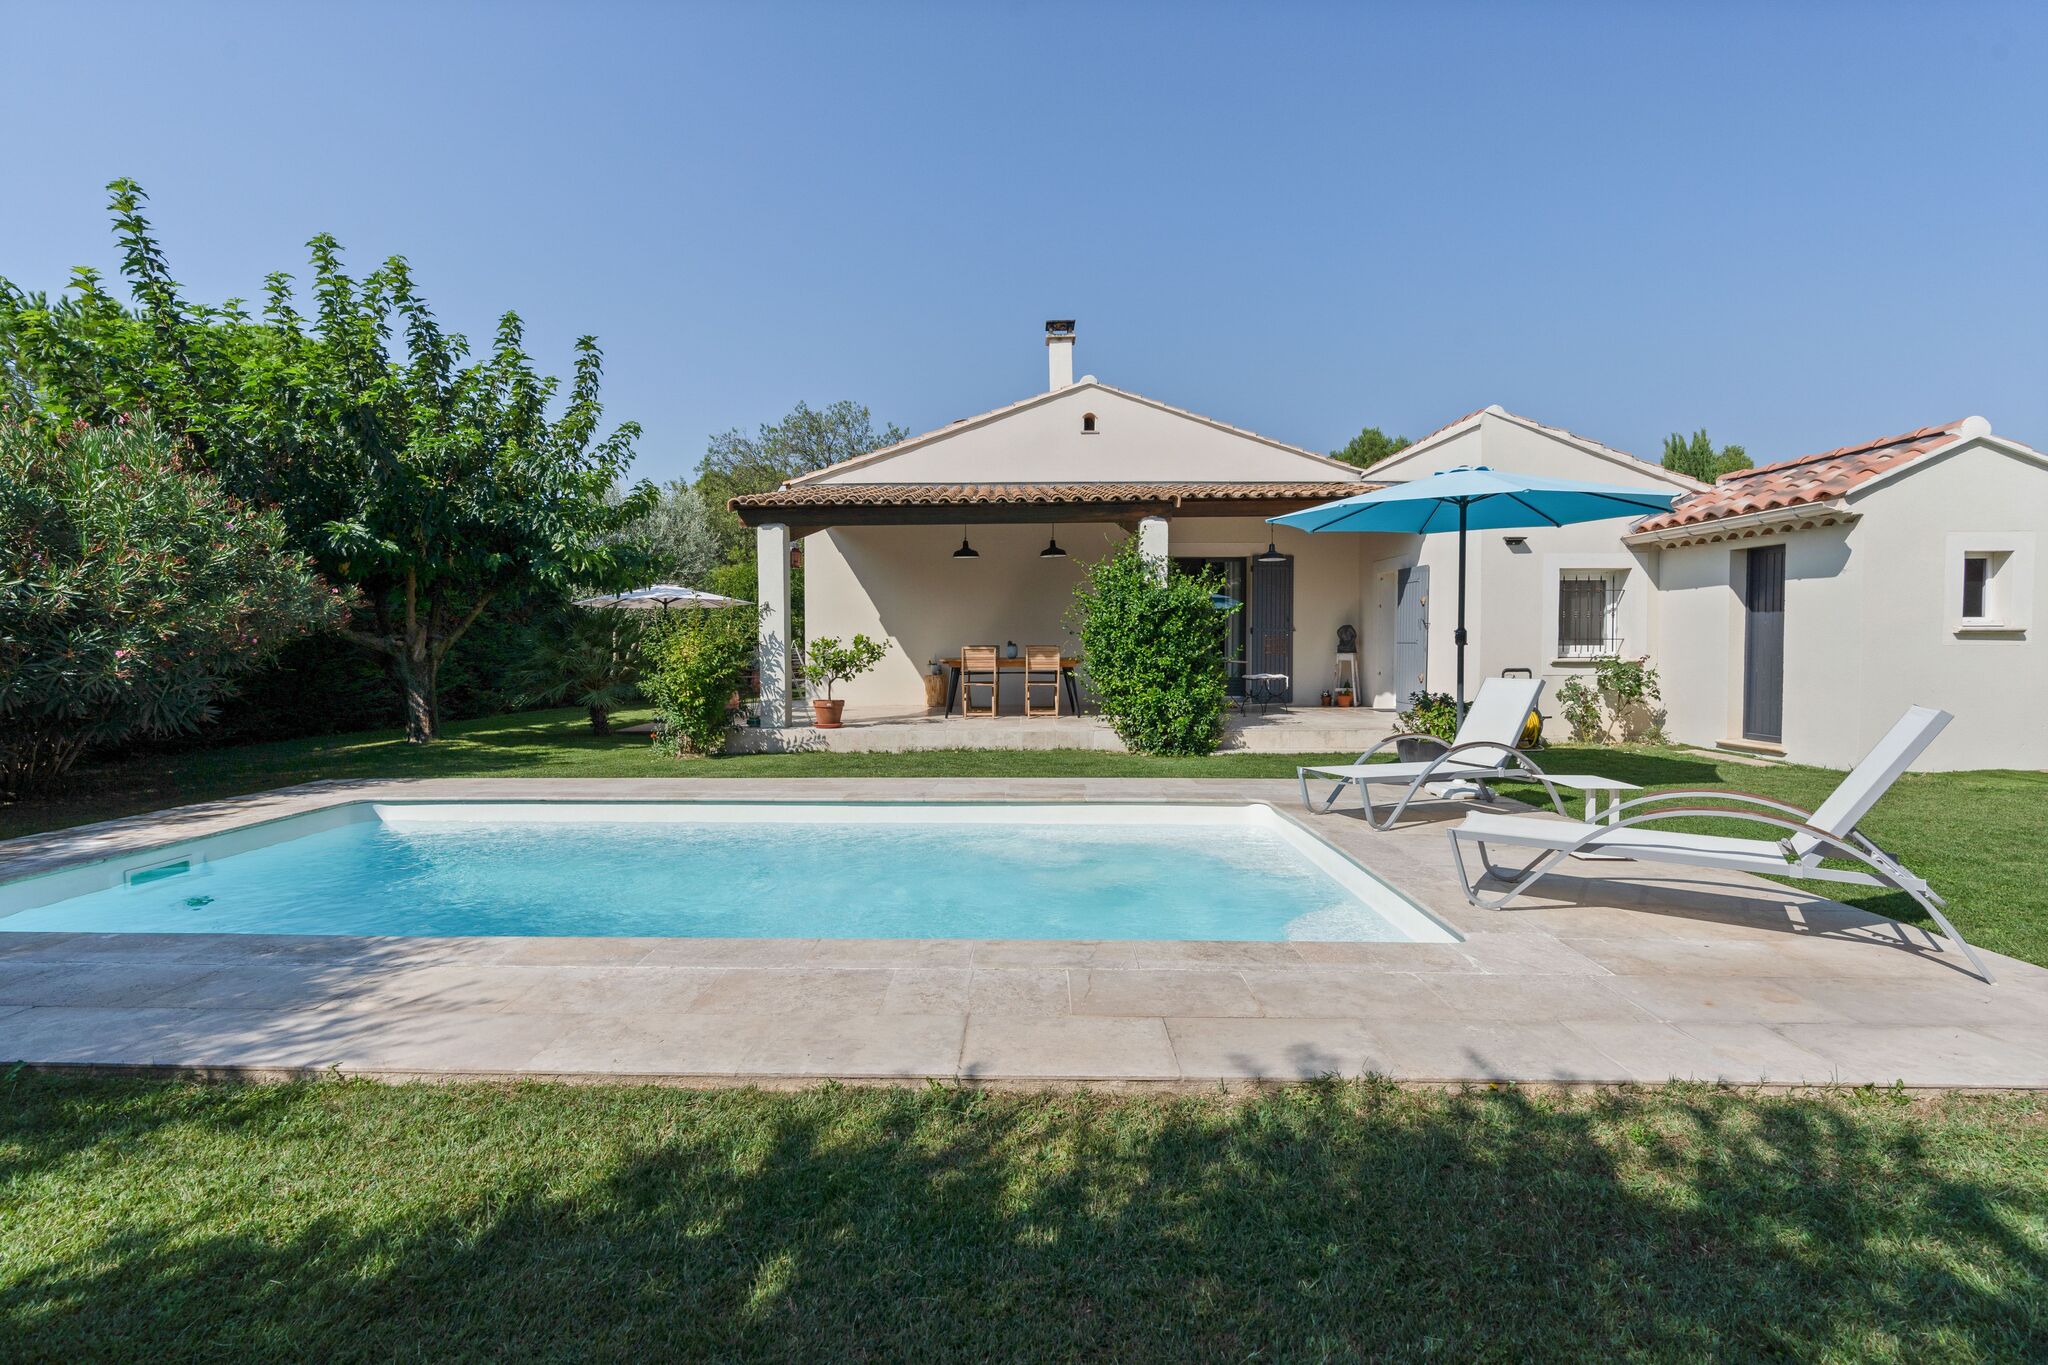 Luxe moderne villa met privézwembad en omheinde tuin in het hart van de Vaucluse